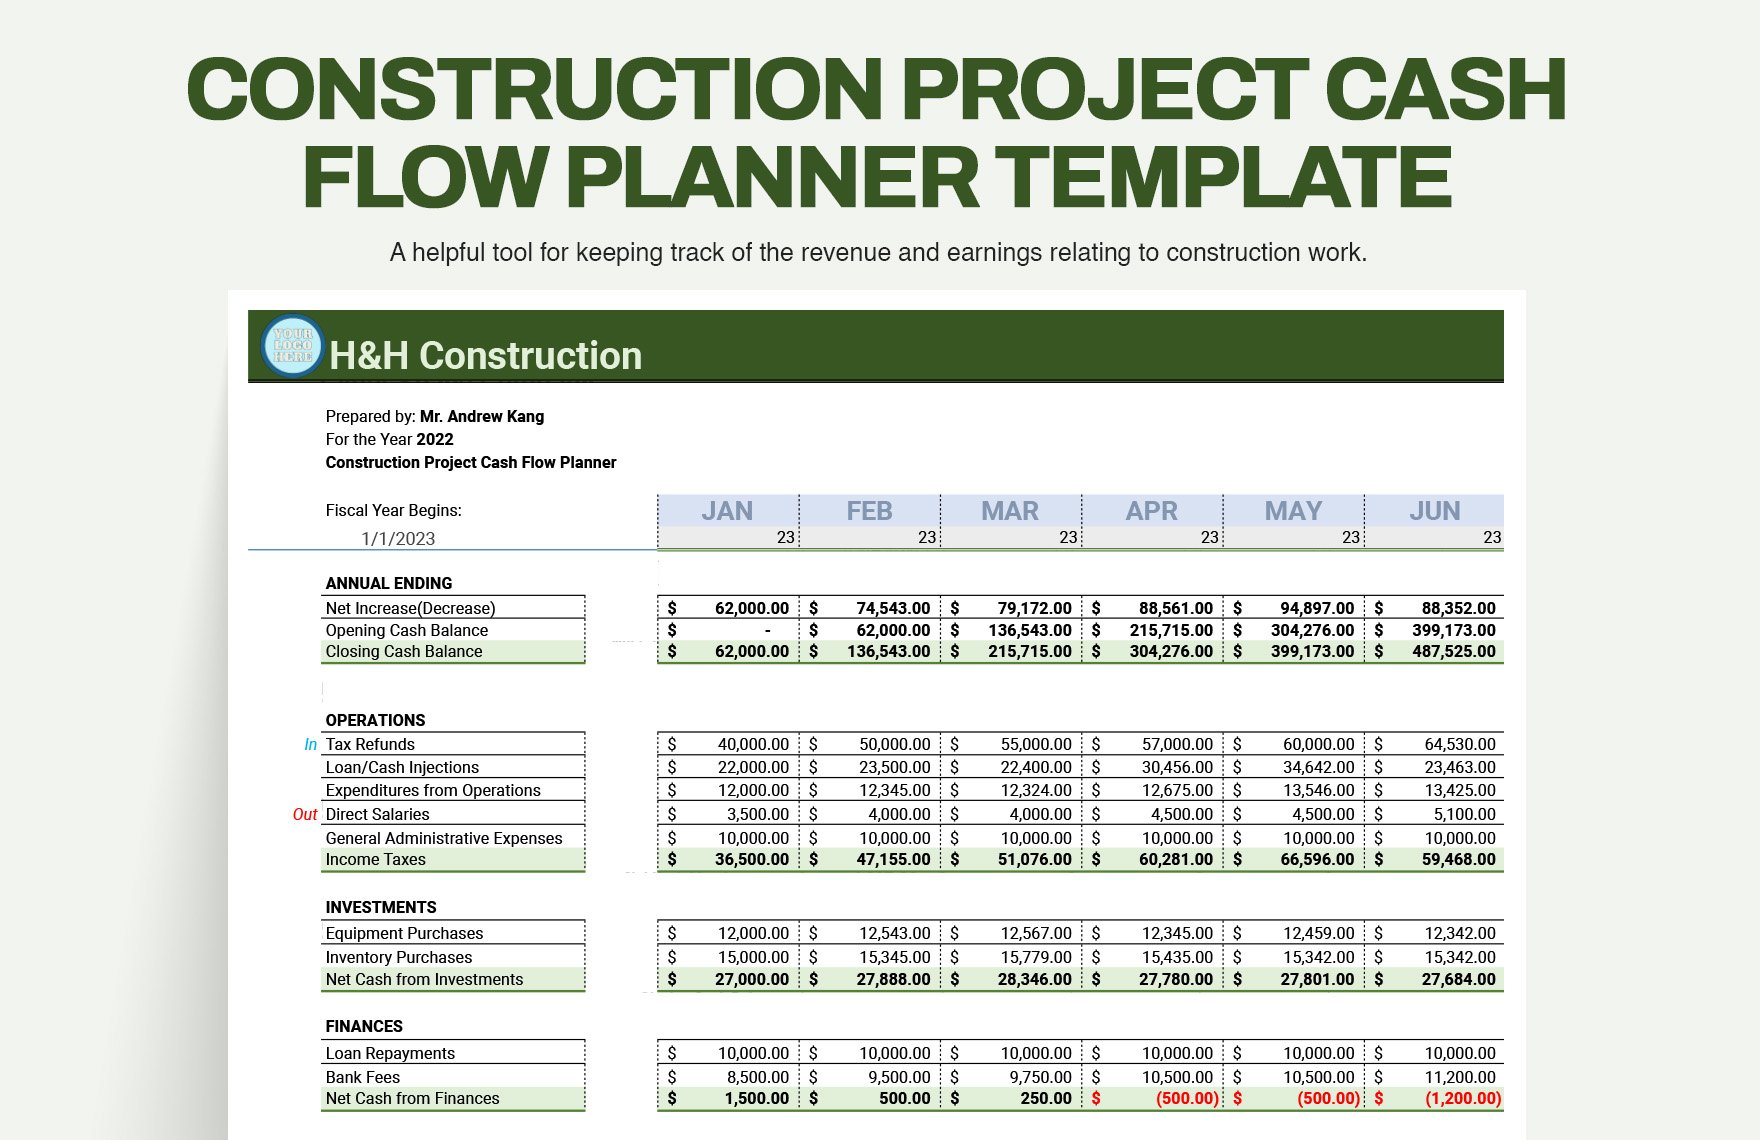 Construction Project Cash Flow Planner Template